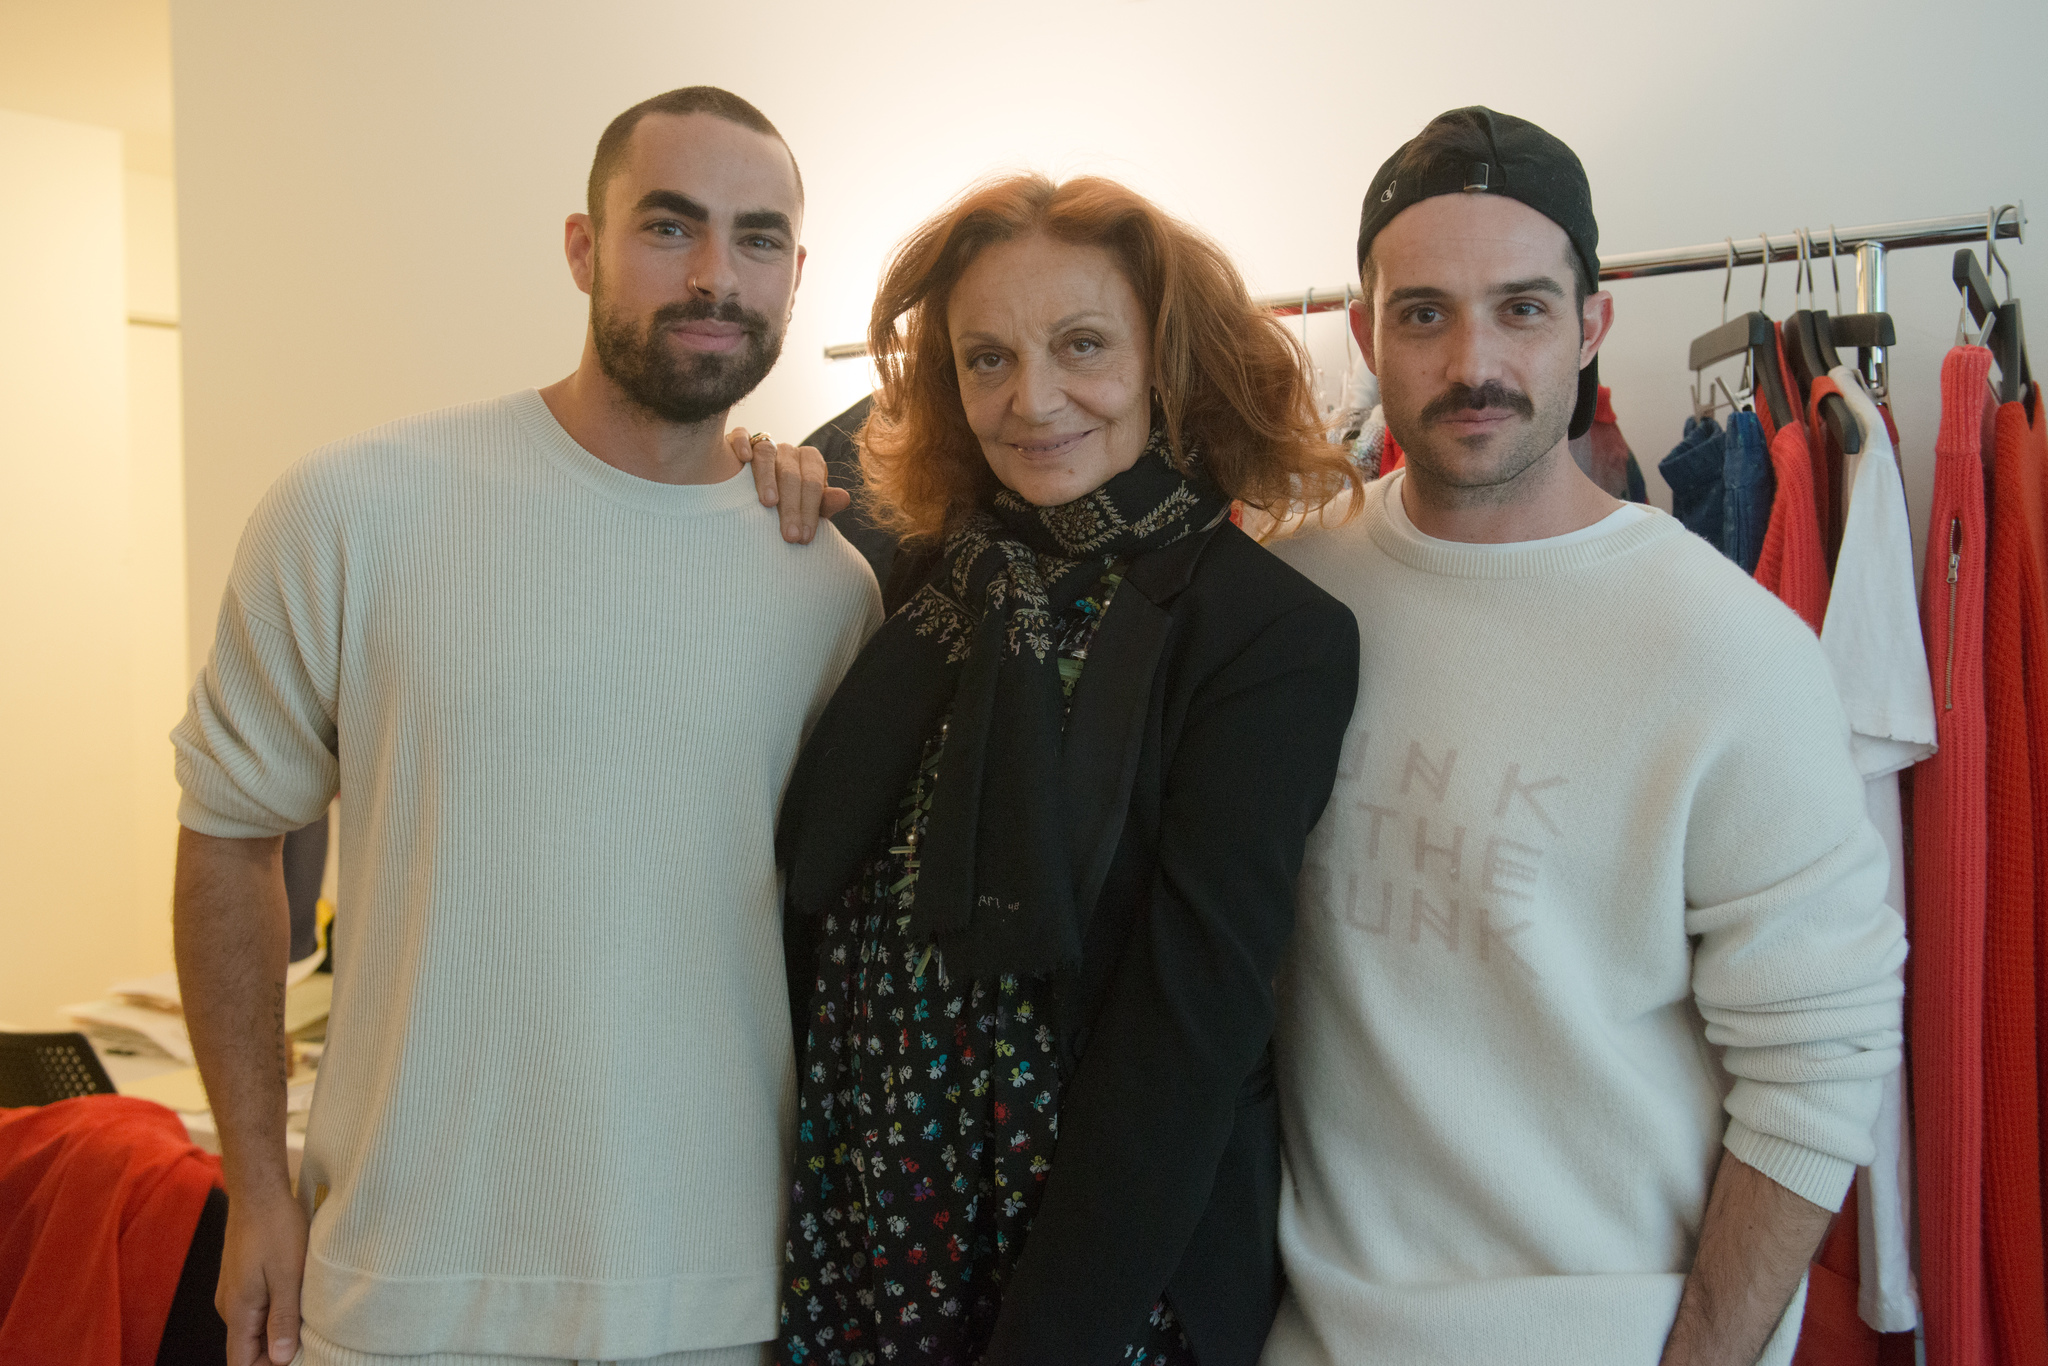 Still of Diane von Fürstenberg, Scott Studenberg and John Targon in The Fashion Fund (2014)